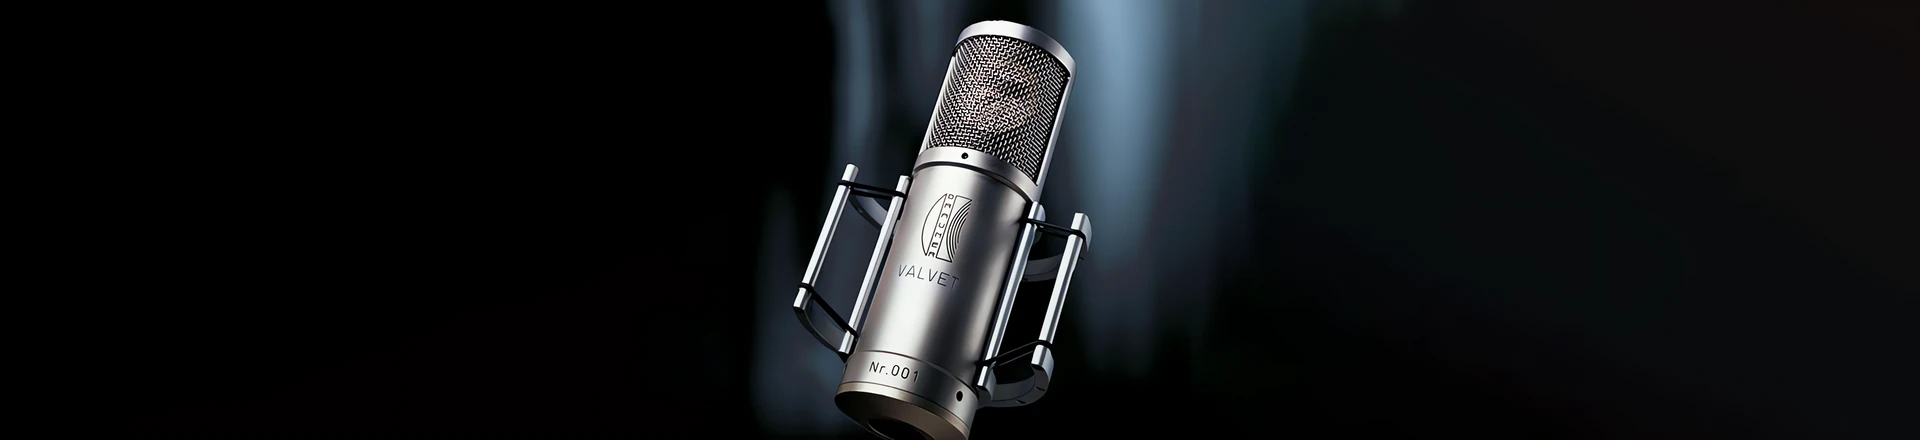 Brauner aktualizuje ofertę mikrofonów studyjnych